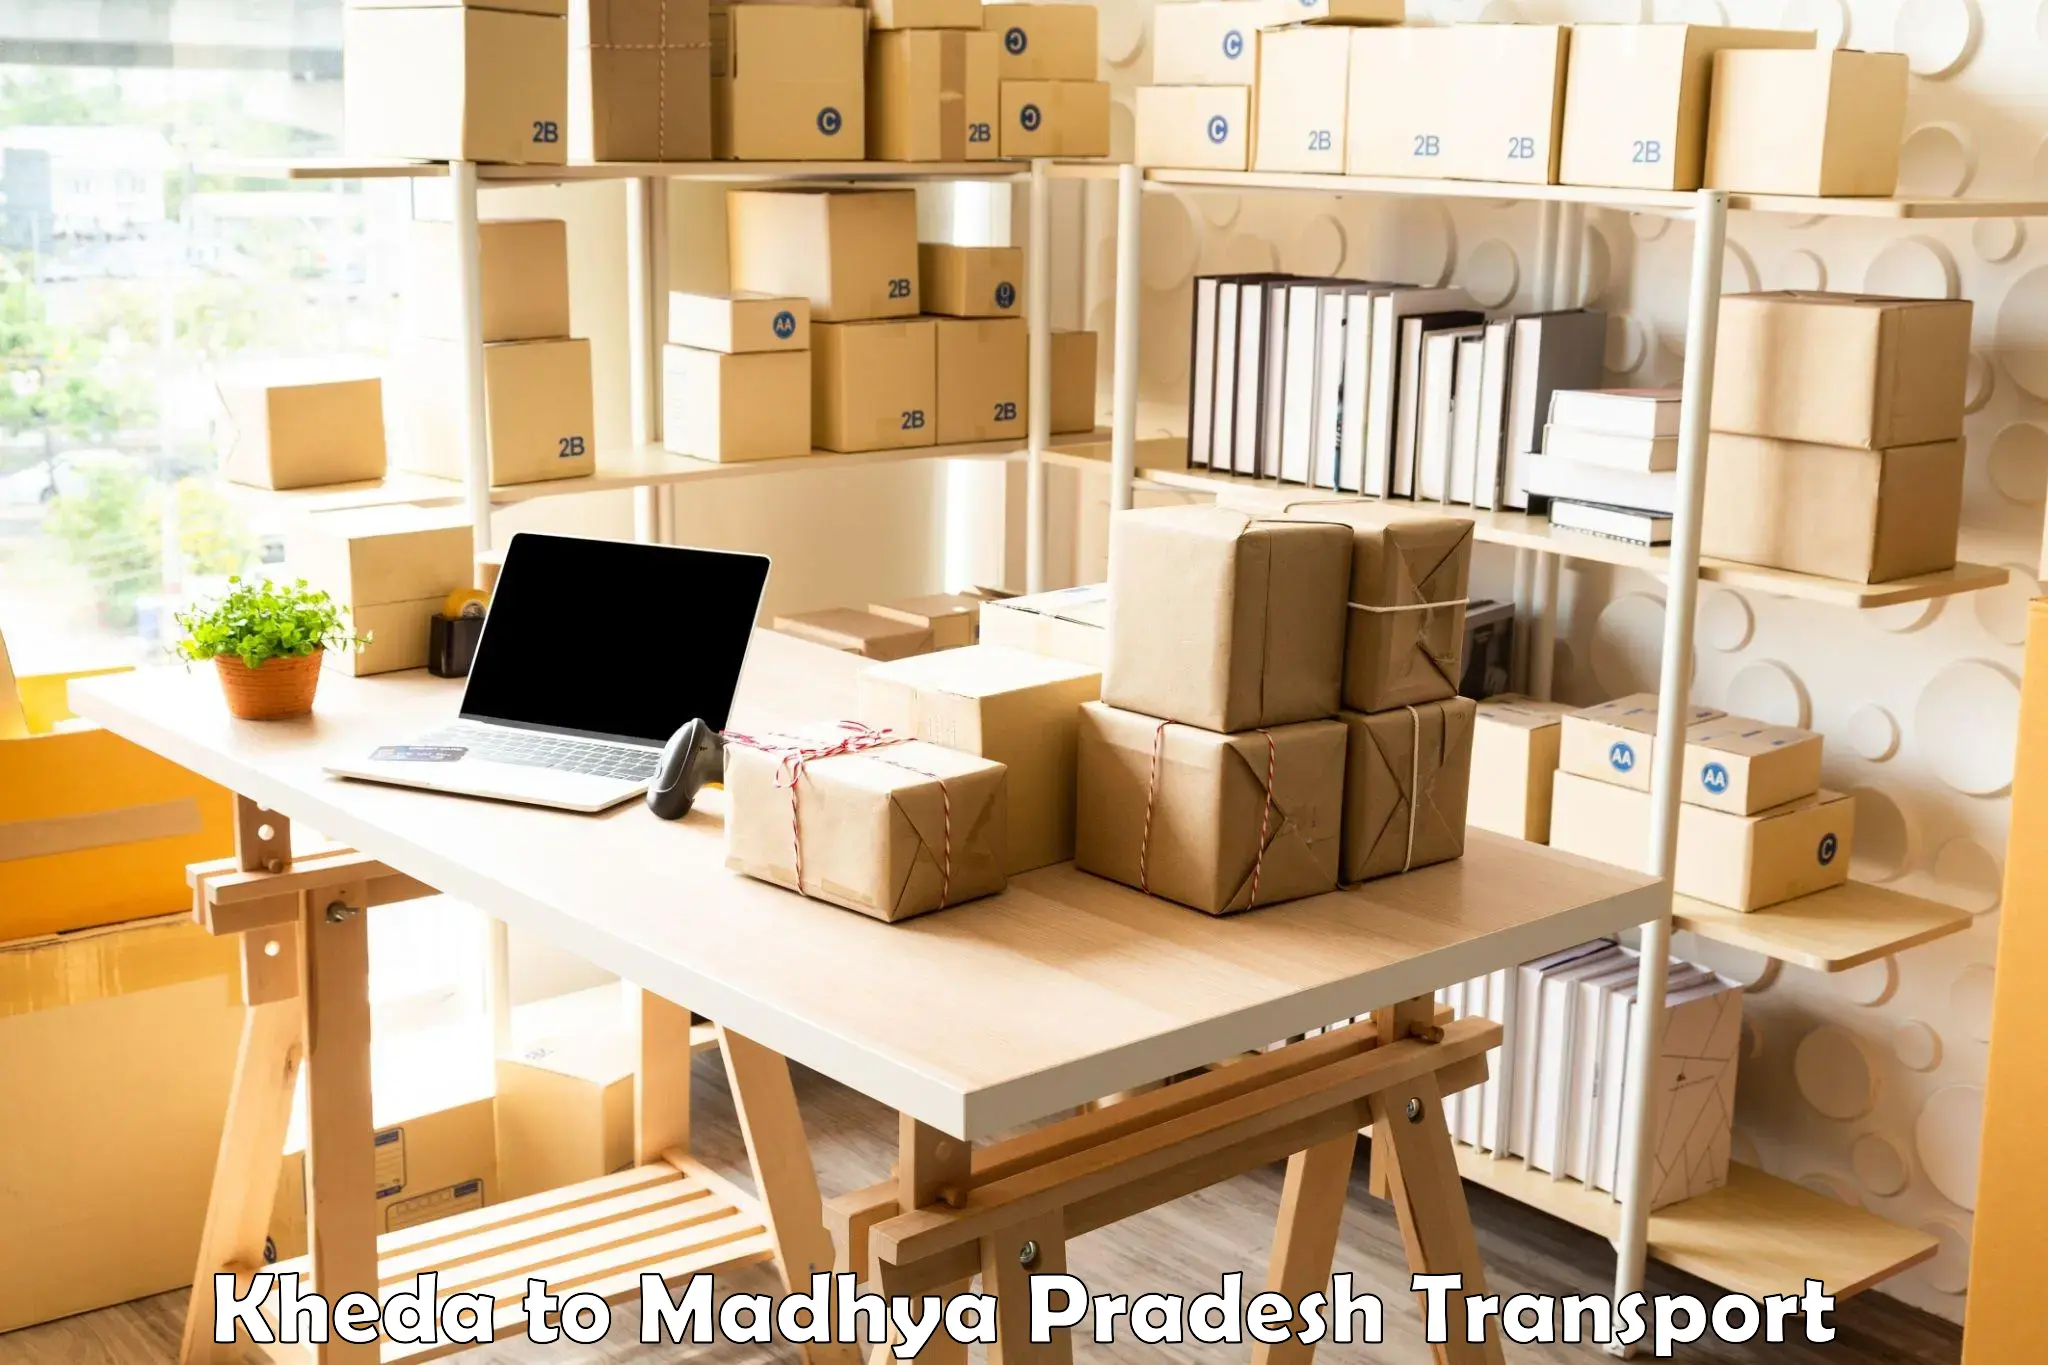 Furniture transport service Kheda to Deosar